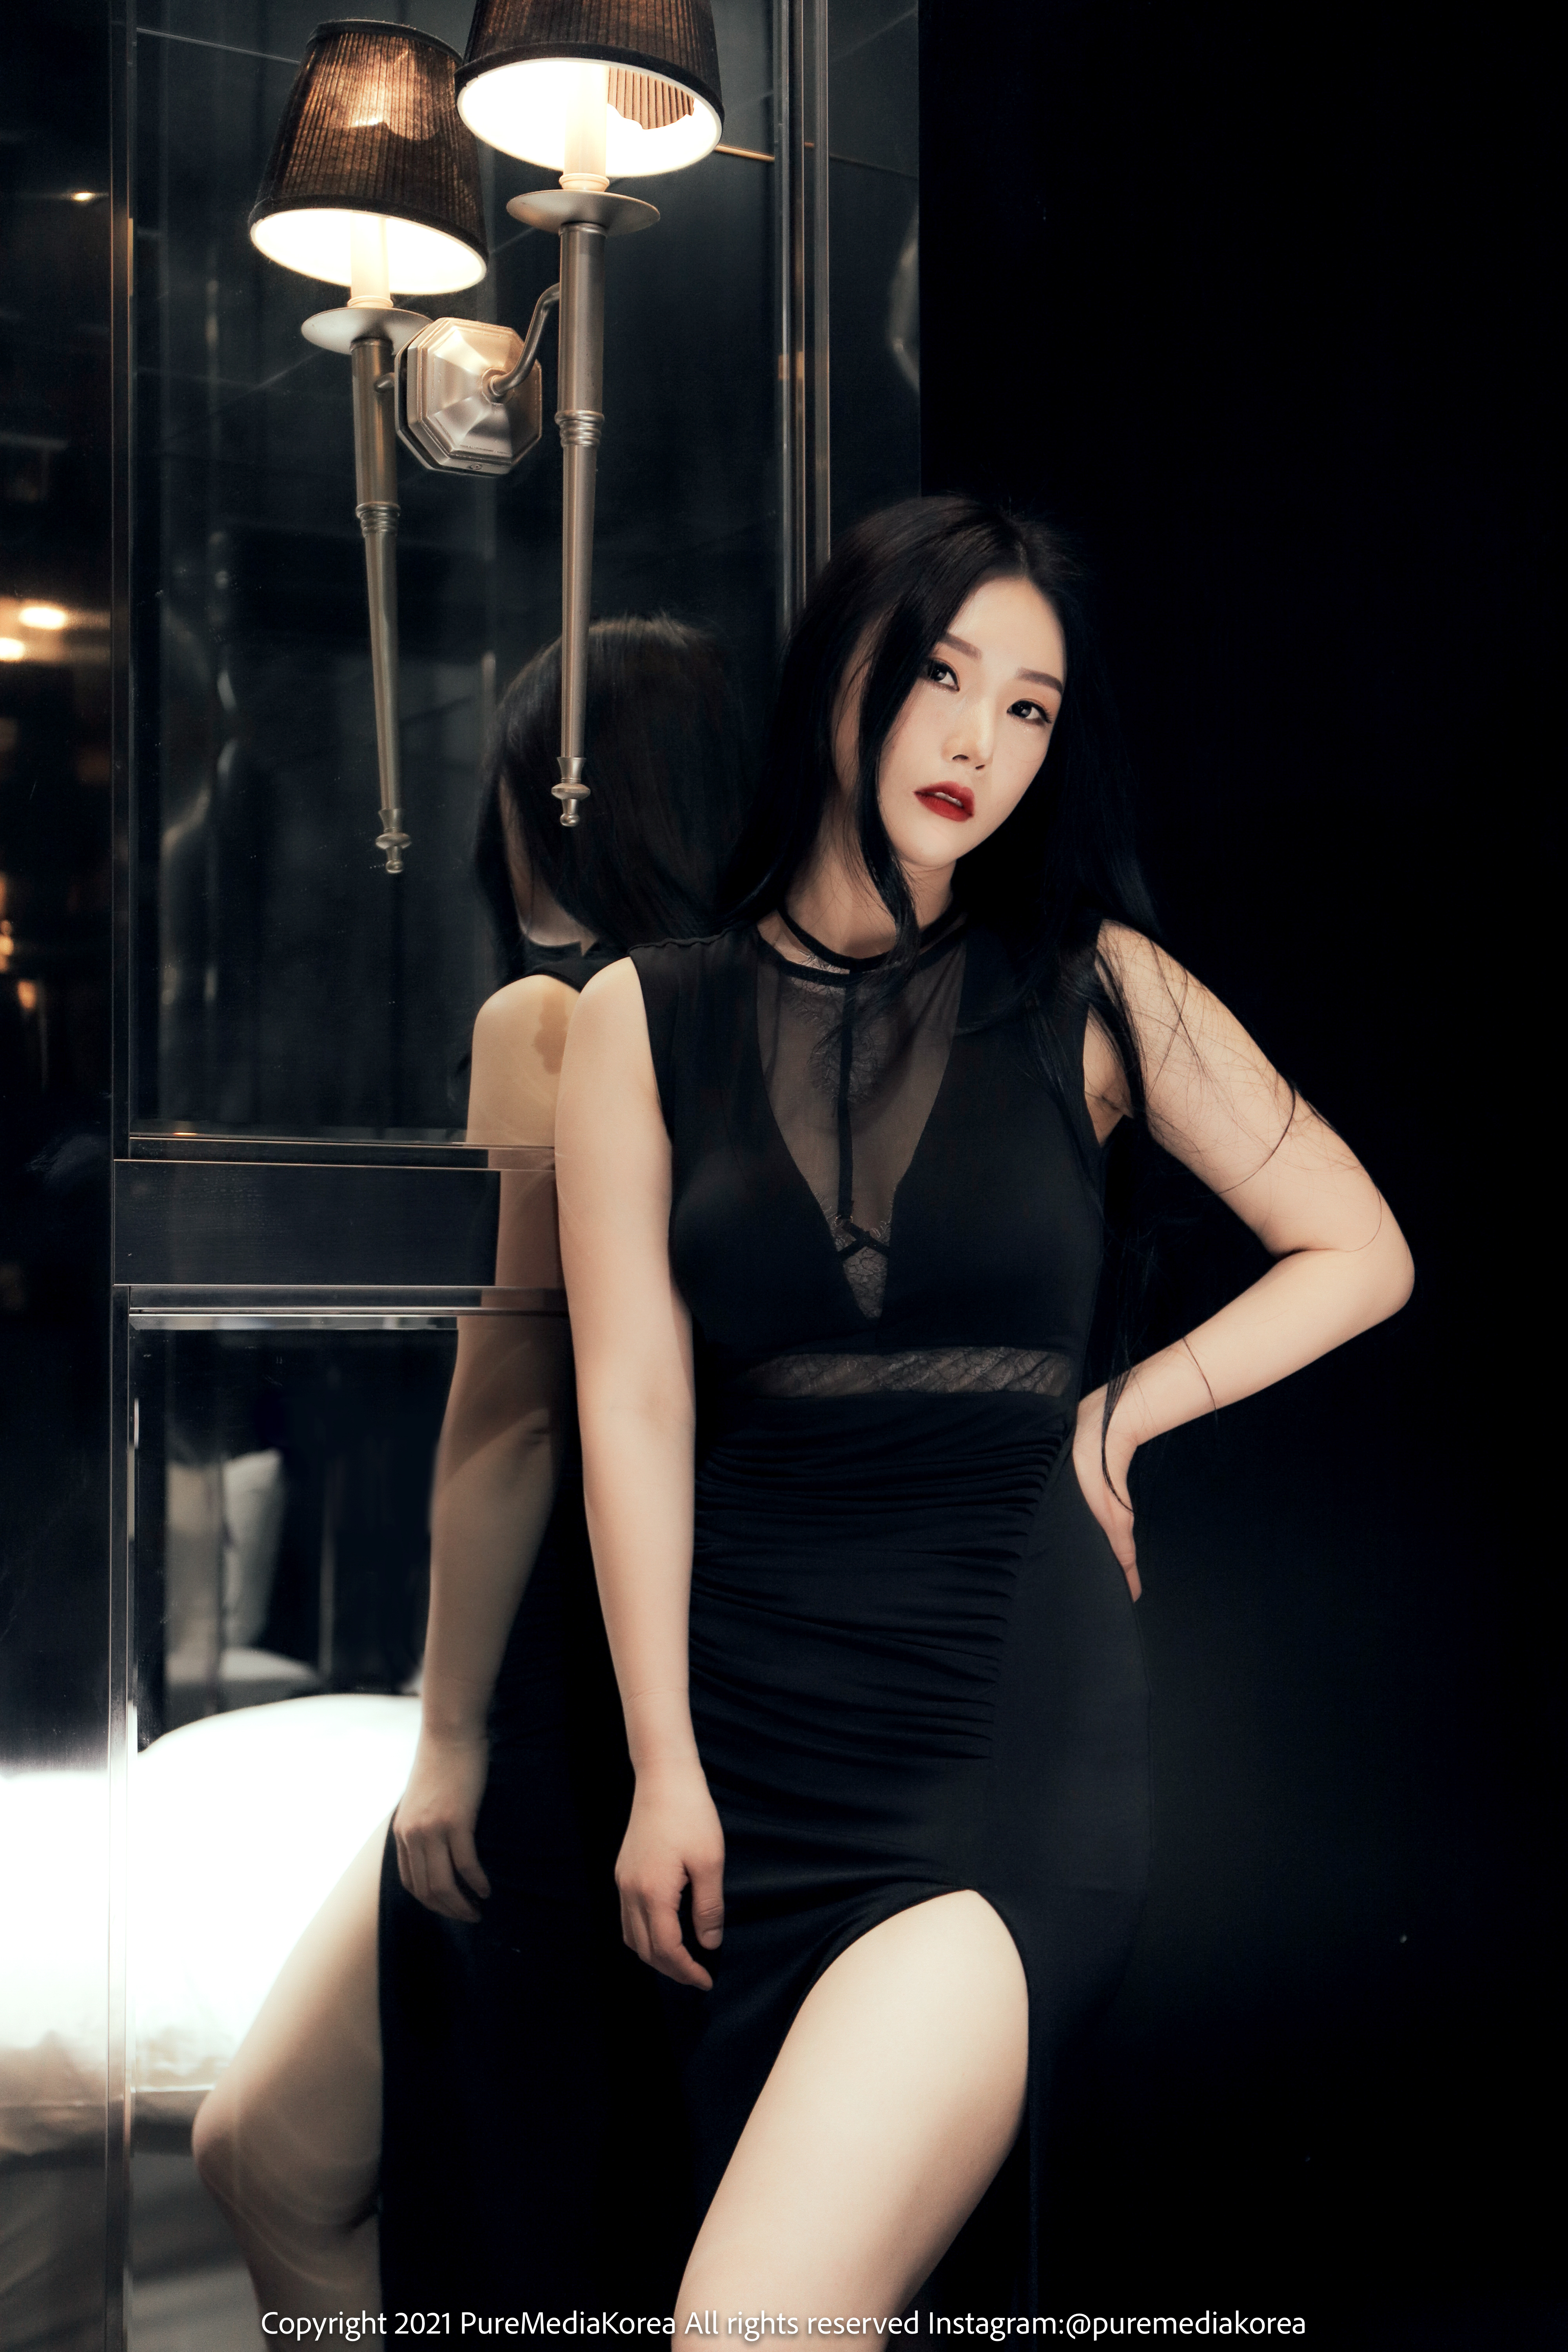 Model Women Korean Model Korean Women Asian Dress Pale Long Hair Black Hair 4000x6000